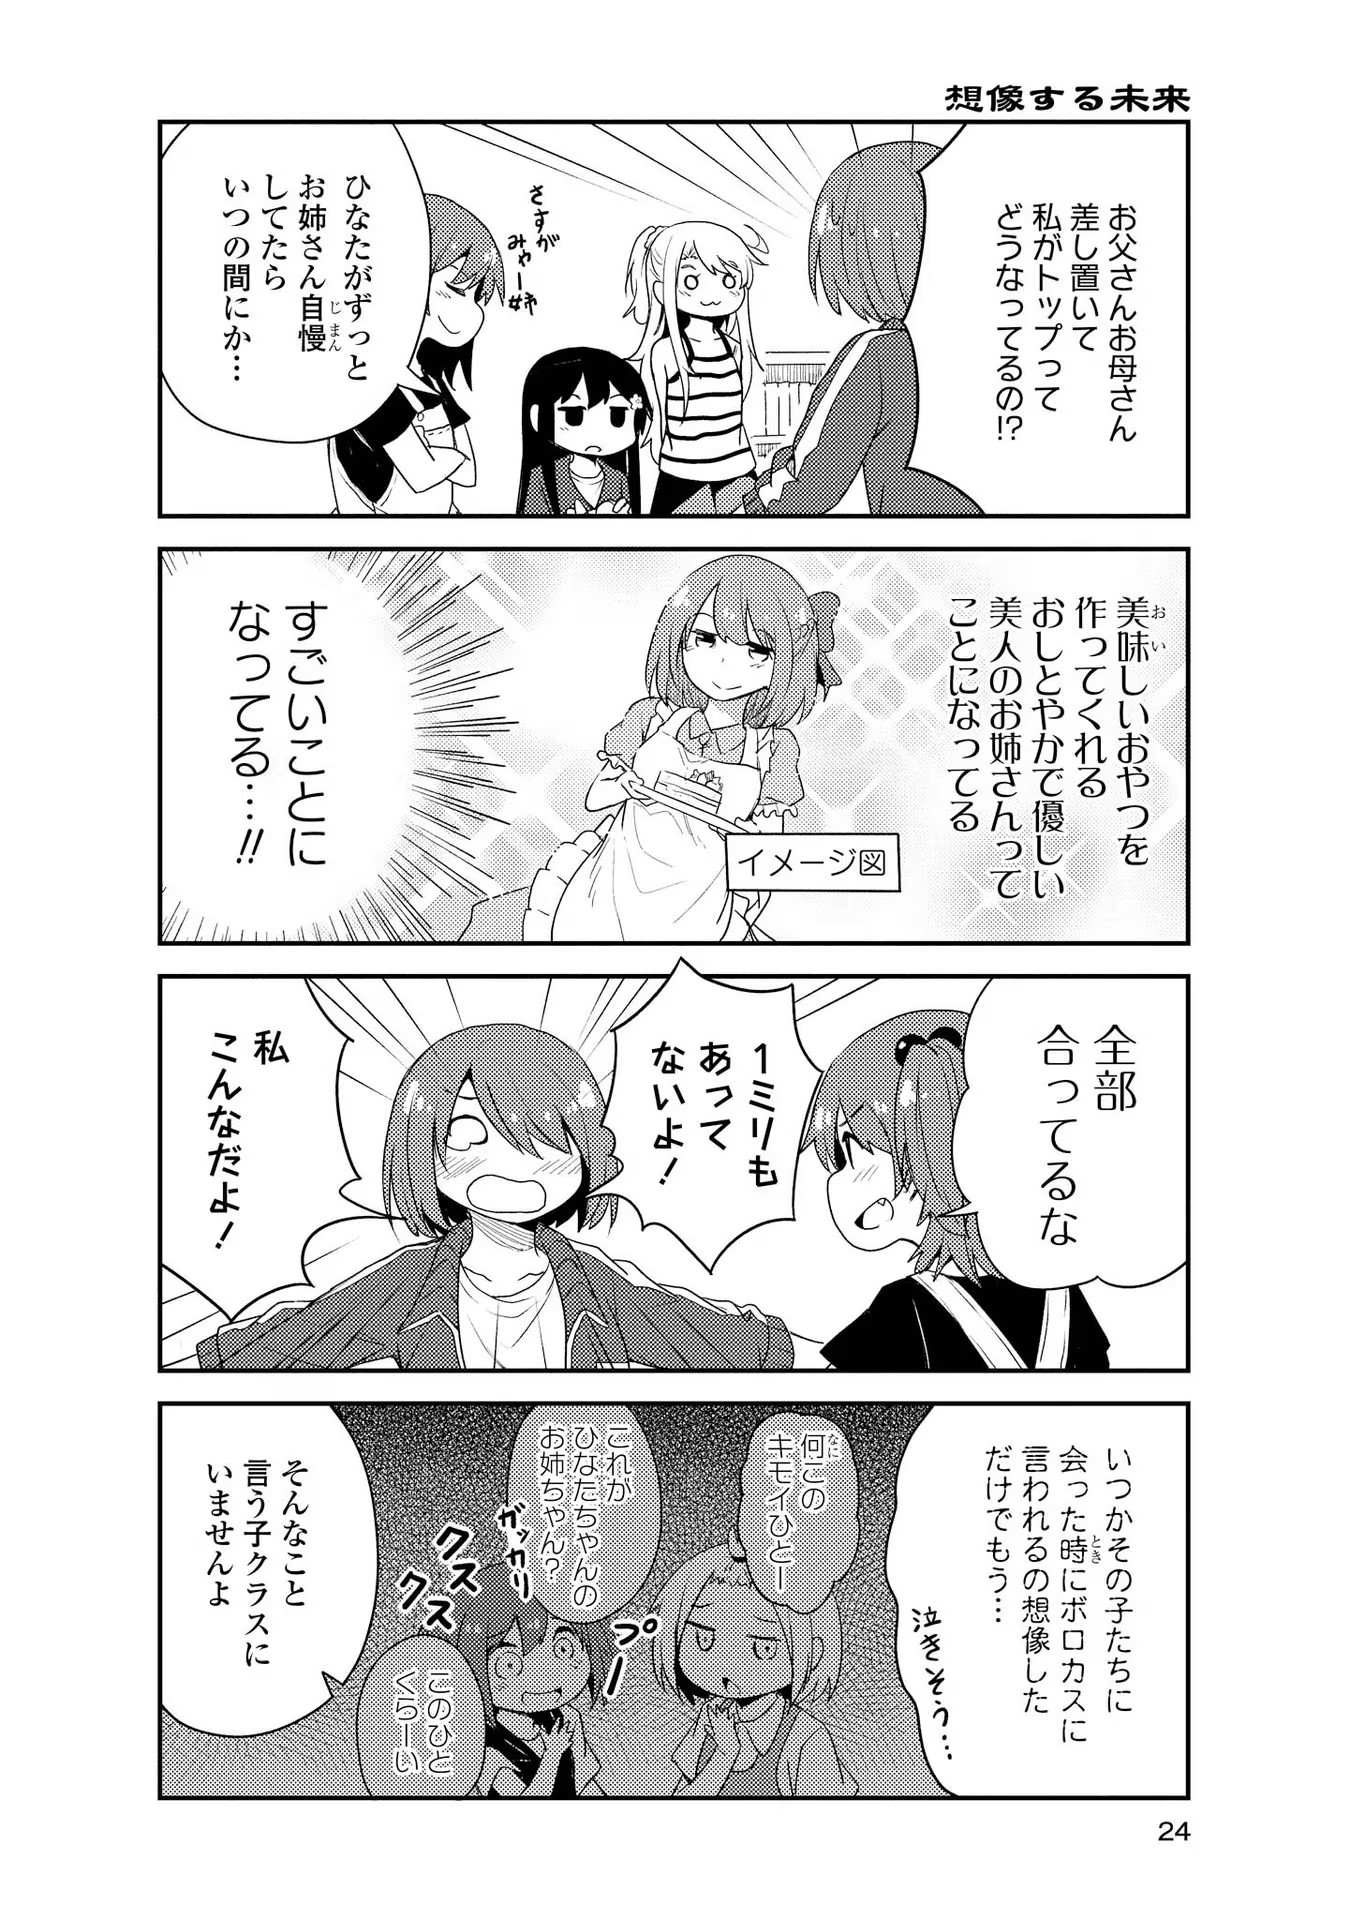 Watashi ni Tenshi ga Maiorita! - Chapter 12 - Page 4